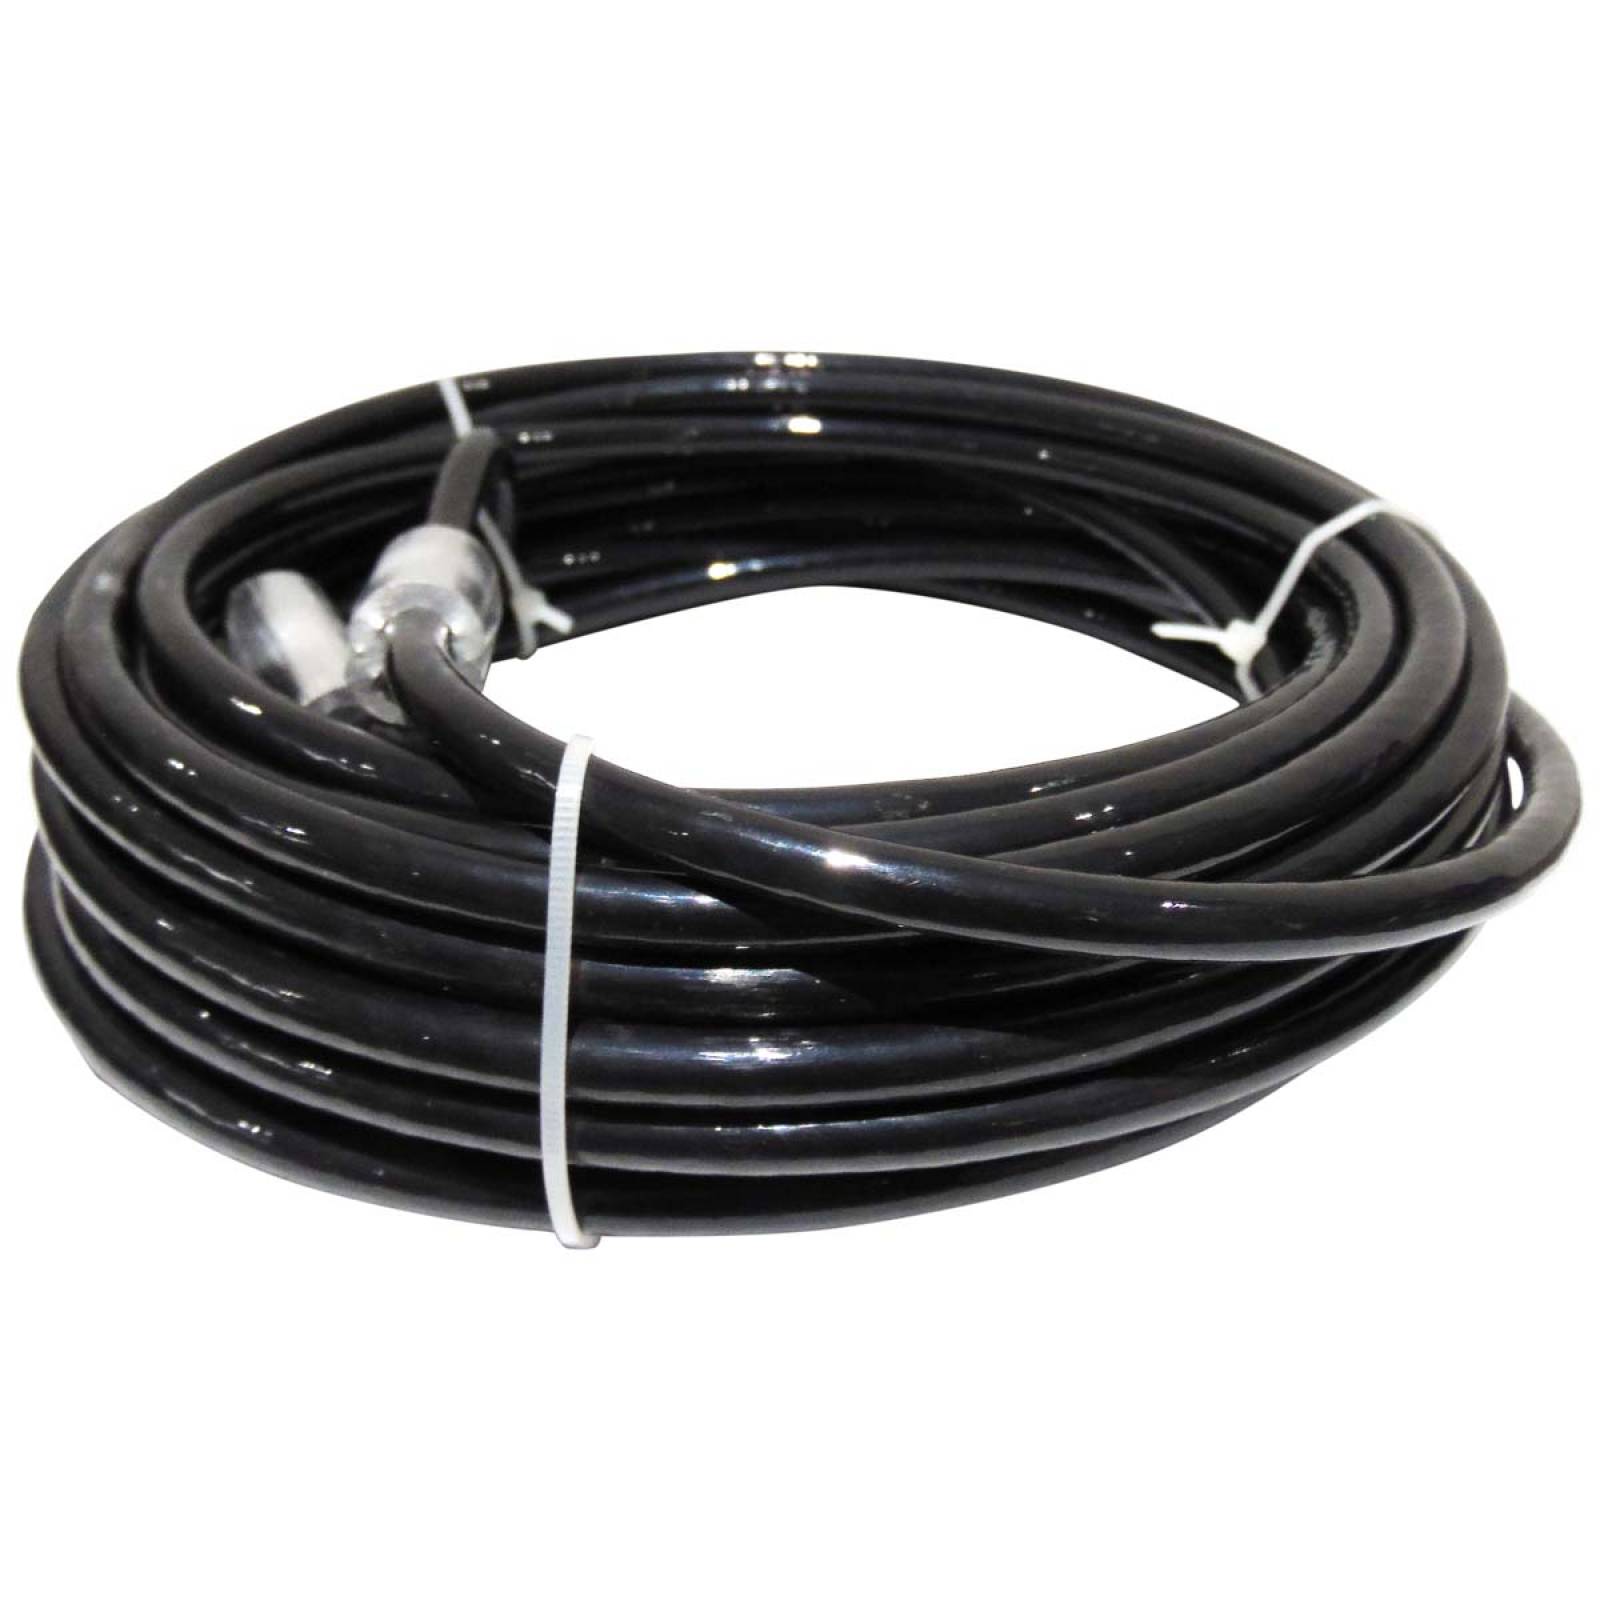 Cable Acero Con Nylon Blister 7x19 3/16-1/4 8 M Negro Obi 